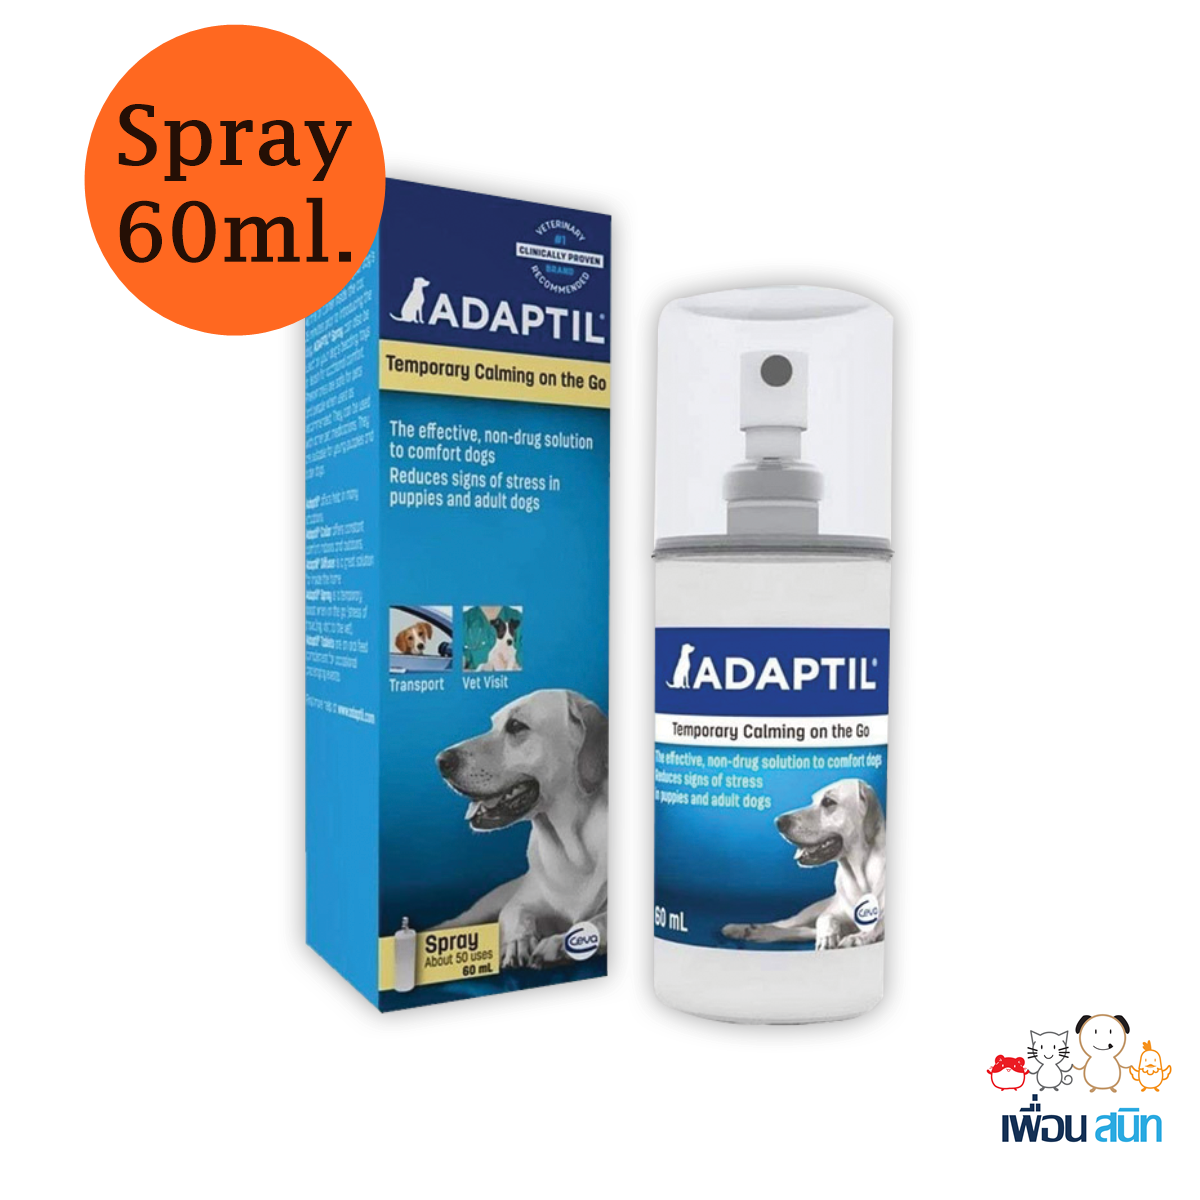 Adaptil Spray helps calm your dog on the move สเปรย์ลดความเครียดสุนัข สเปรย์ปรับพฤติกรรมสุนัข ขนาด 60 ml